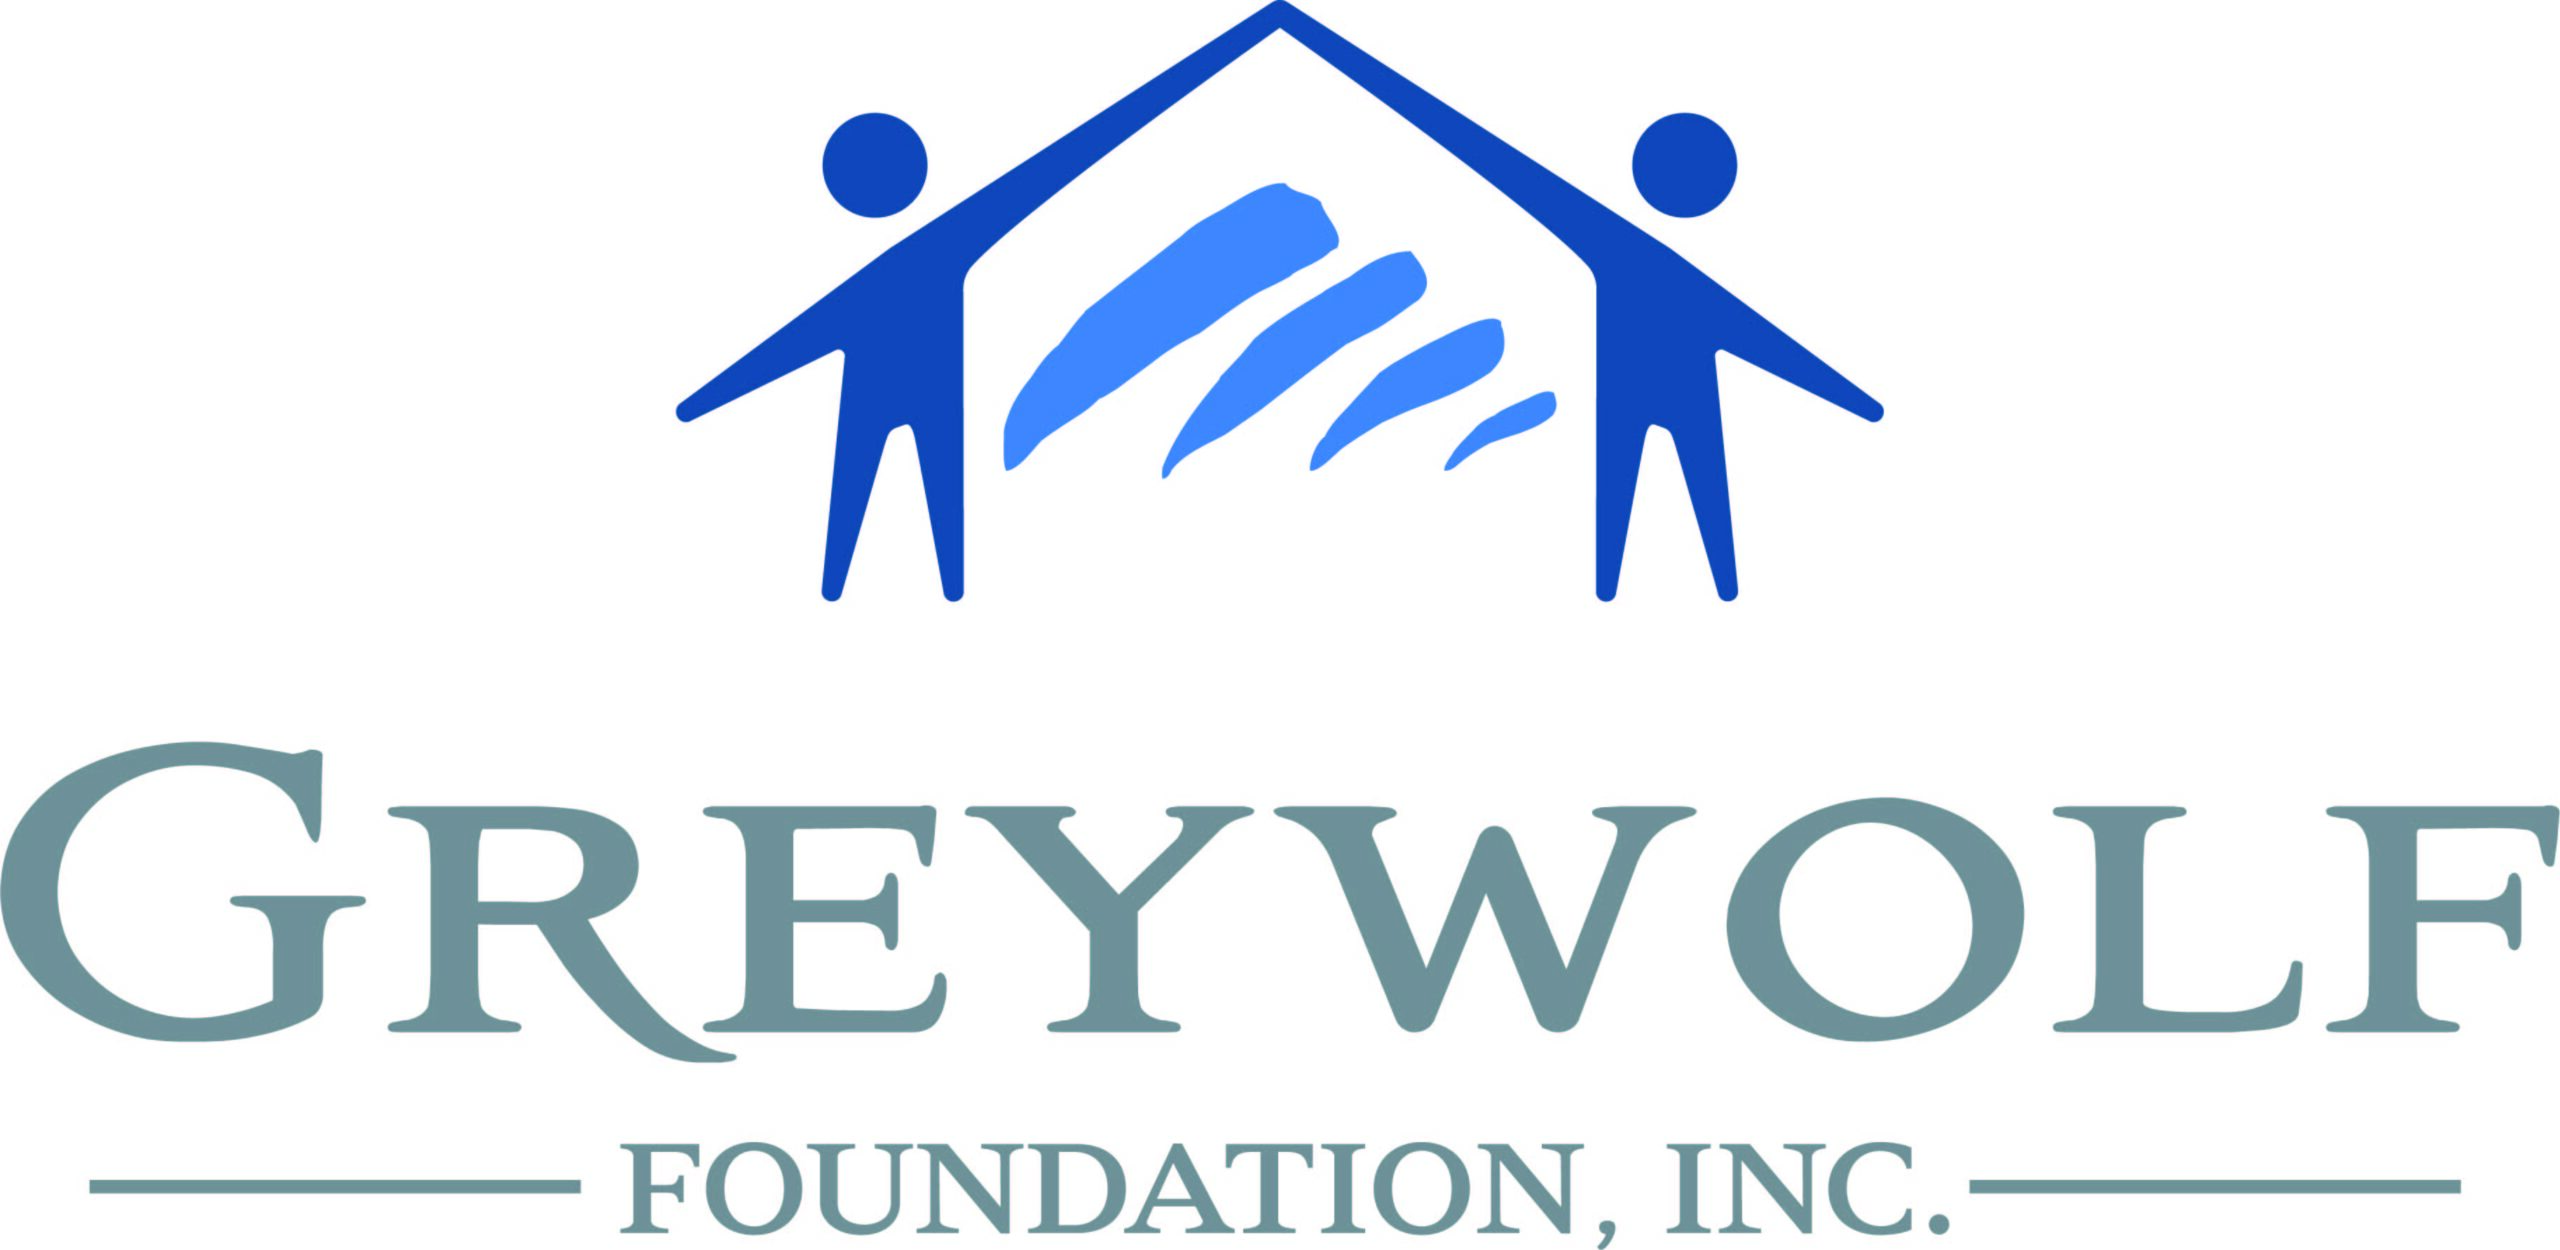 Greywolf Foundation Inc.